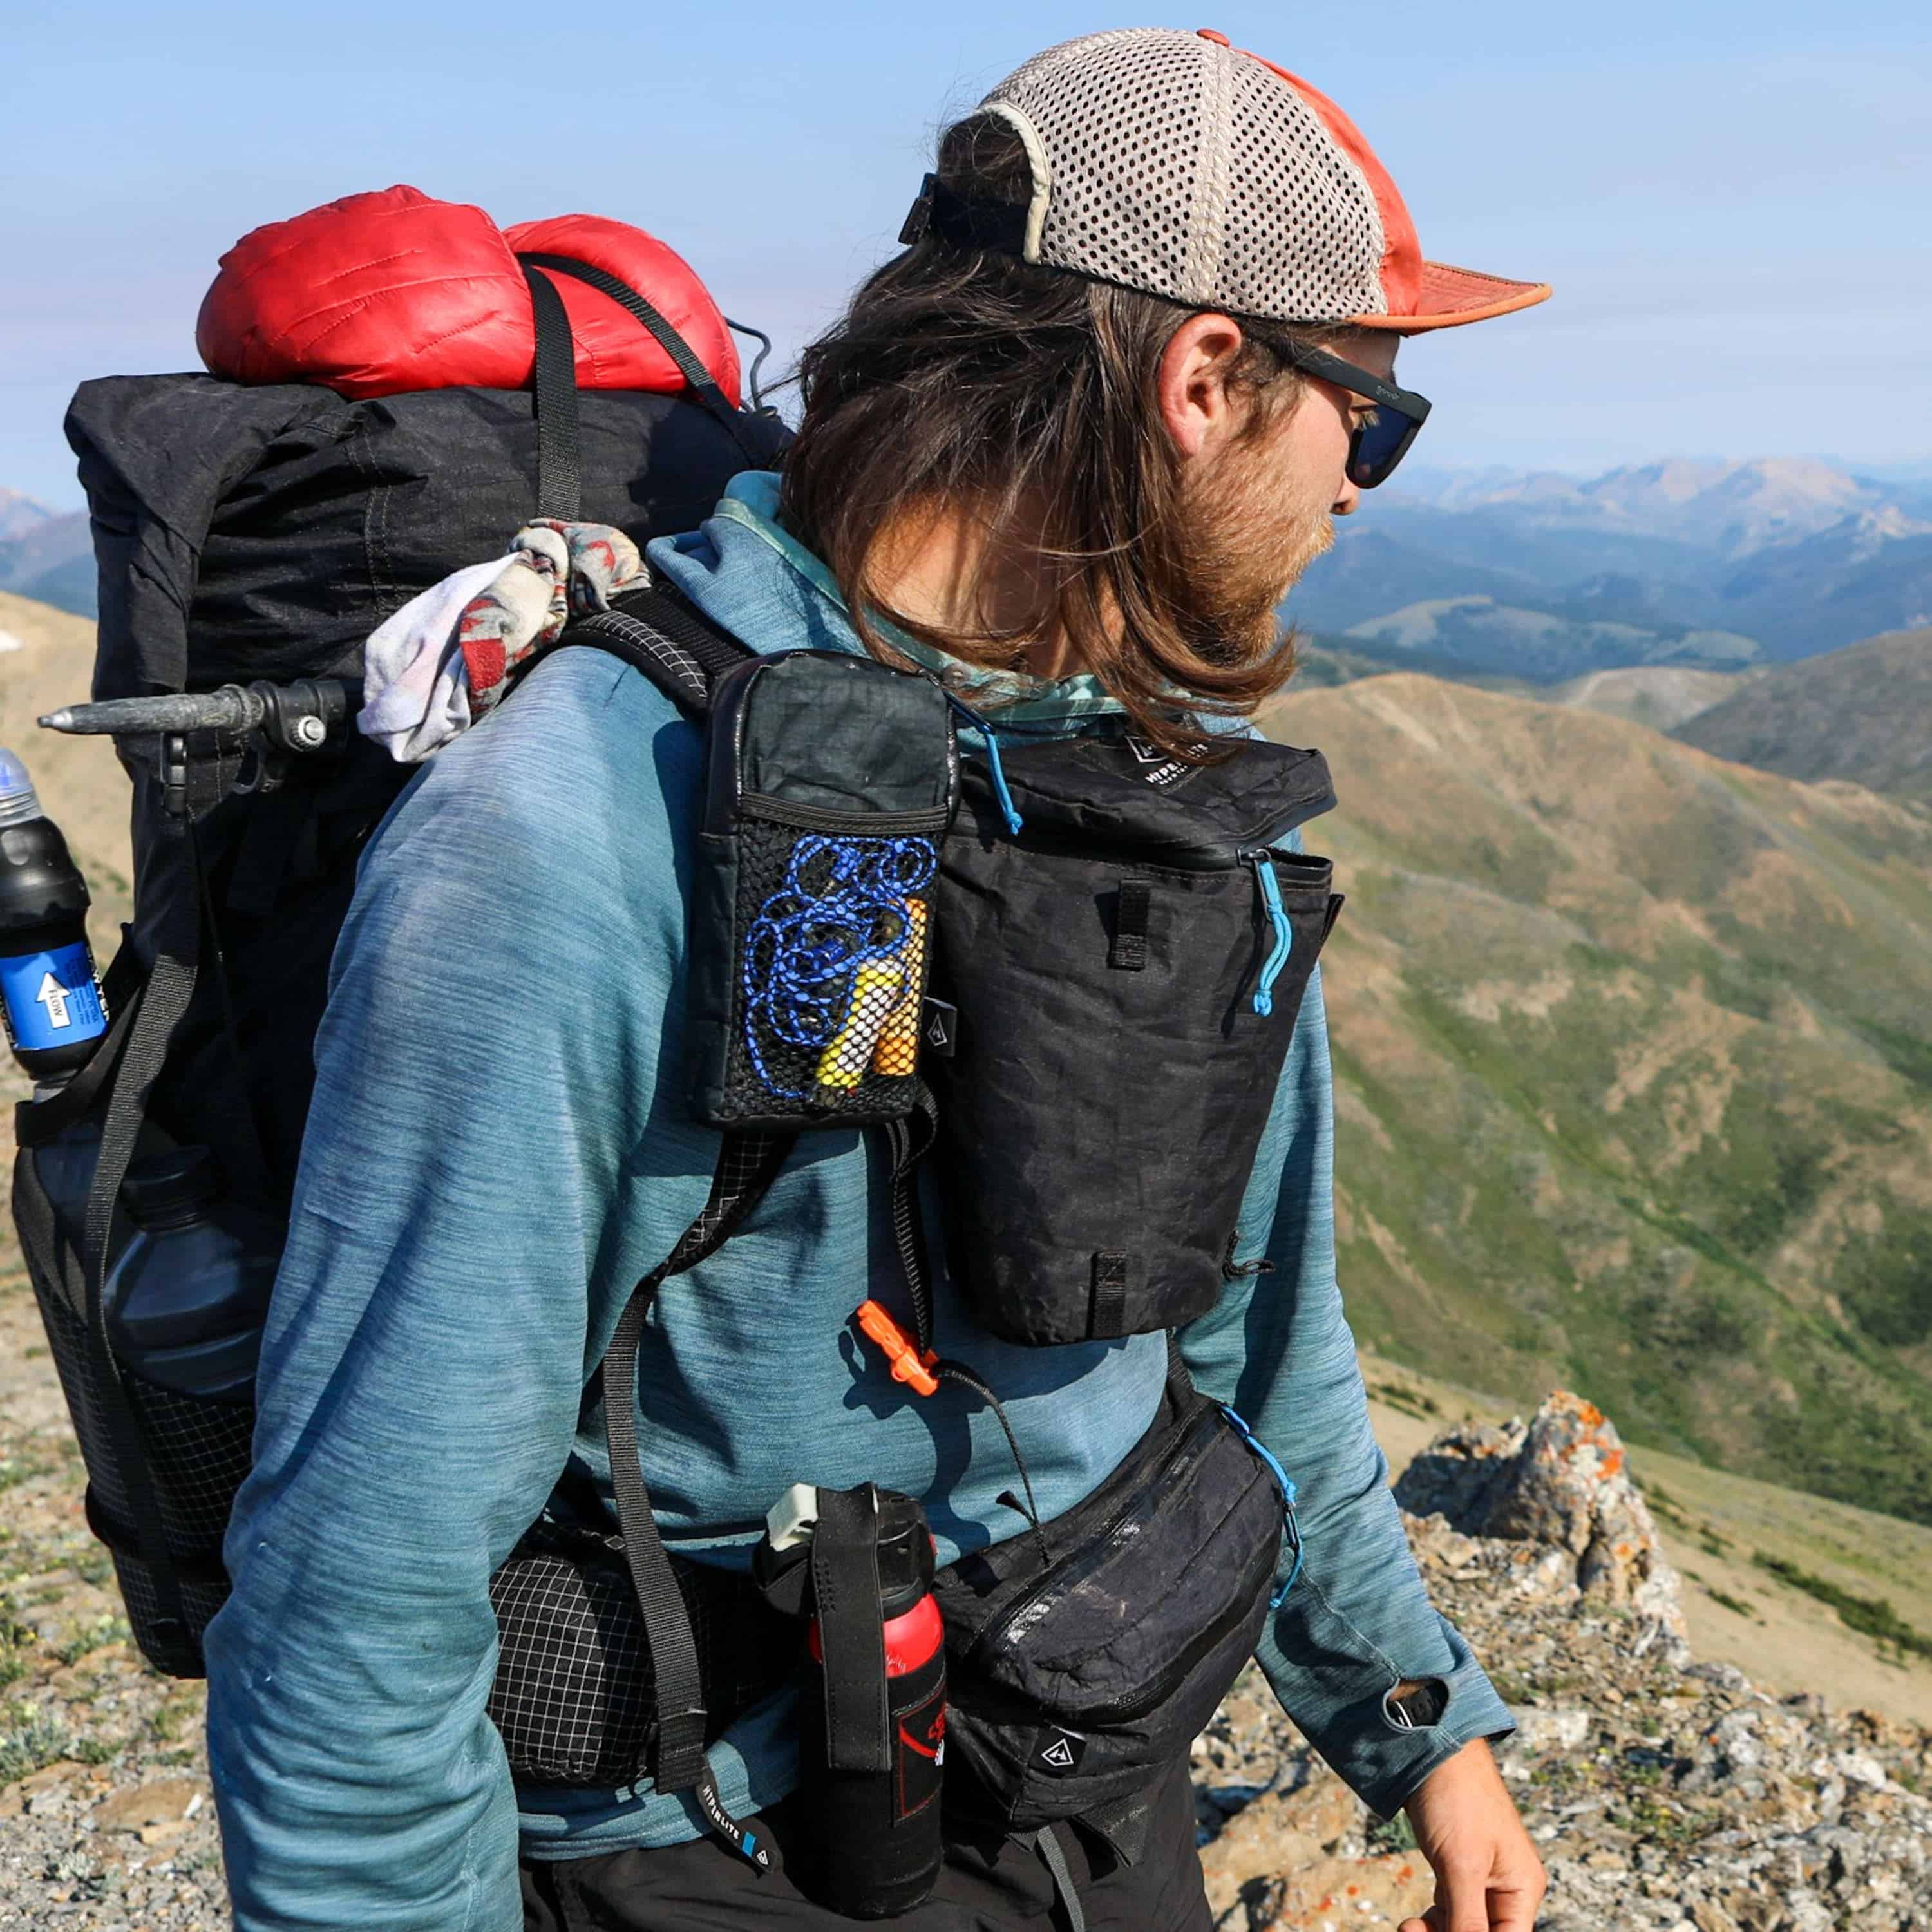 Trekkign Bag Hiking Bag Mount Track Travel Backpacks Rucksack 65 Liter with  Raincover for Men & Women.